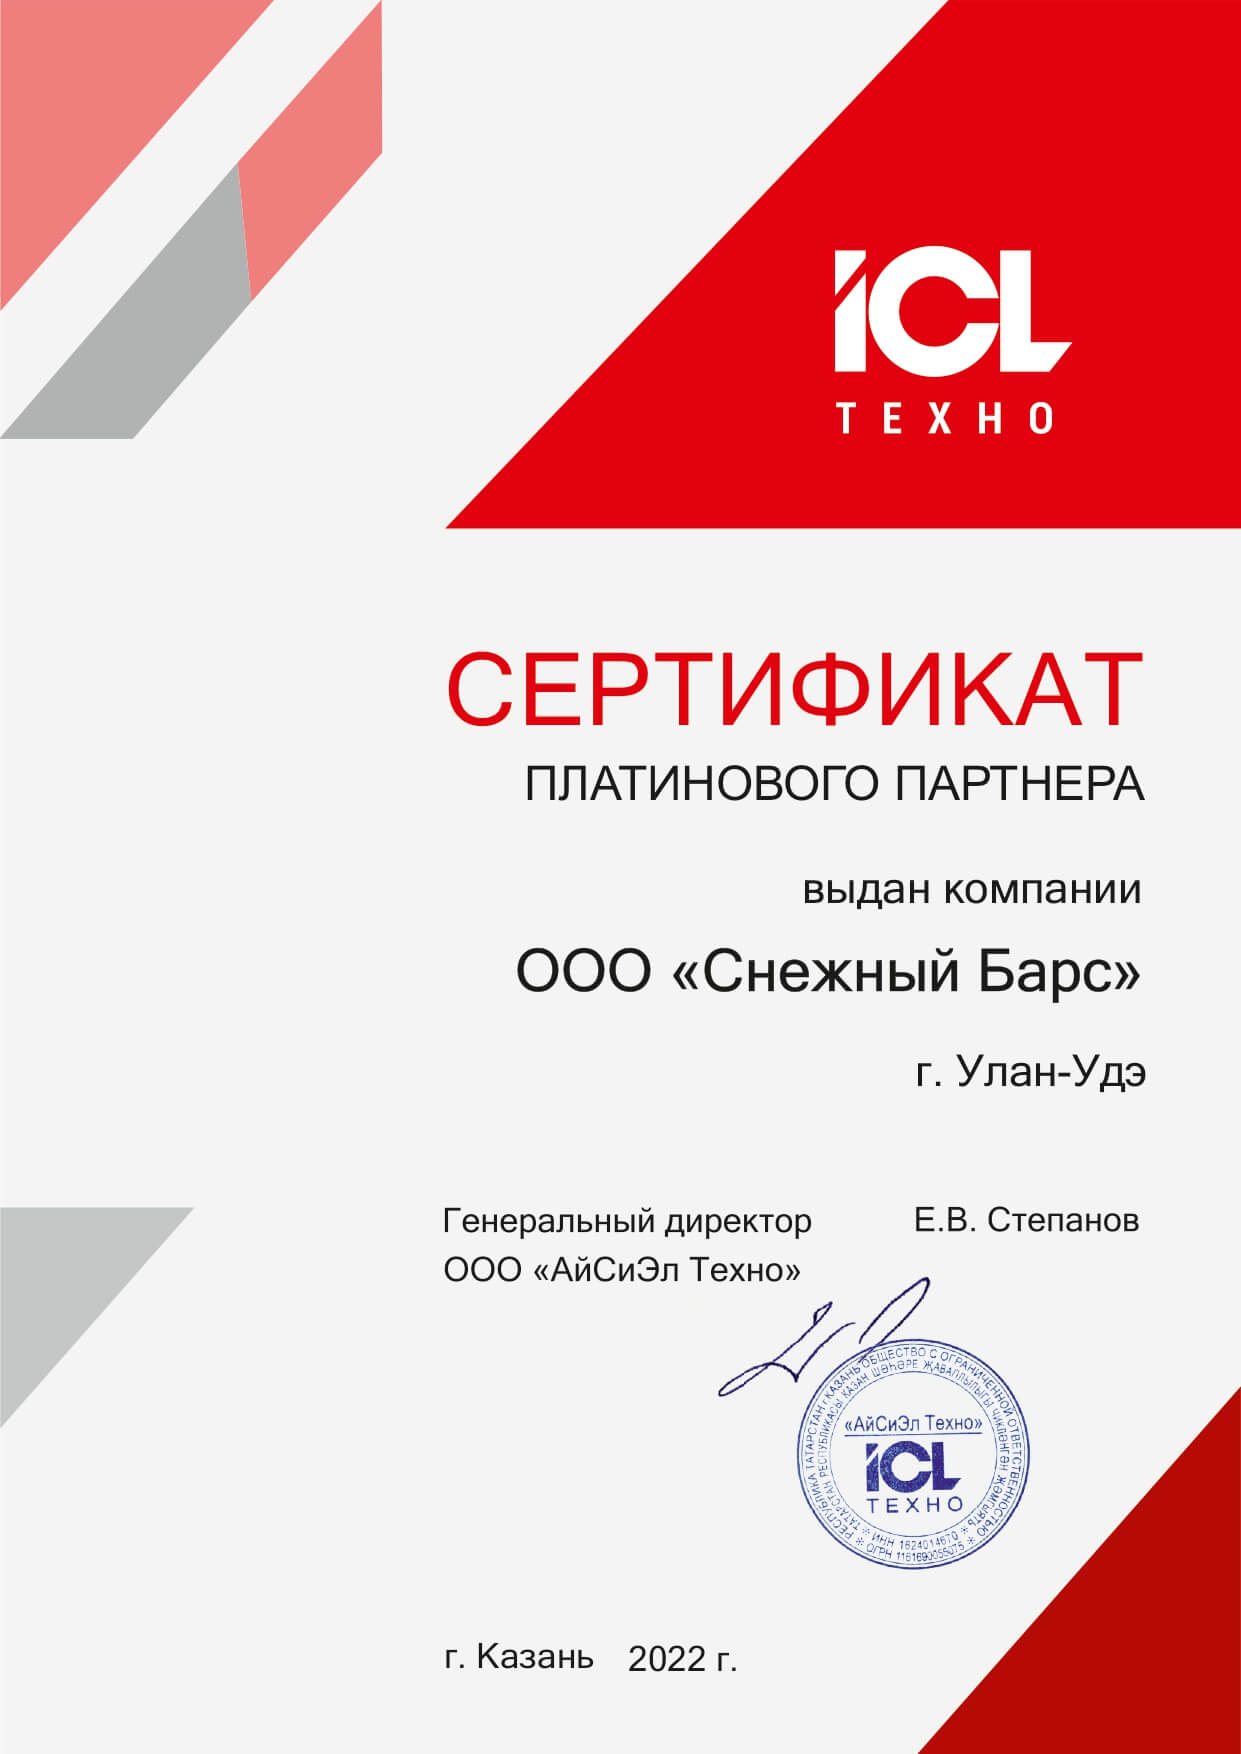 Сертификат ICL